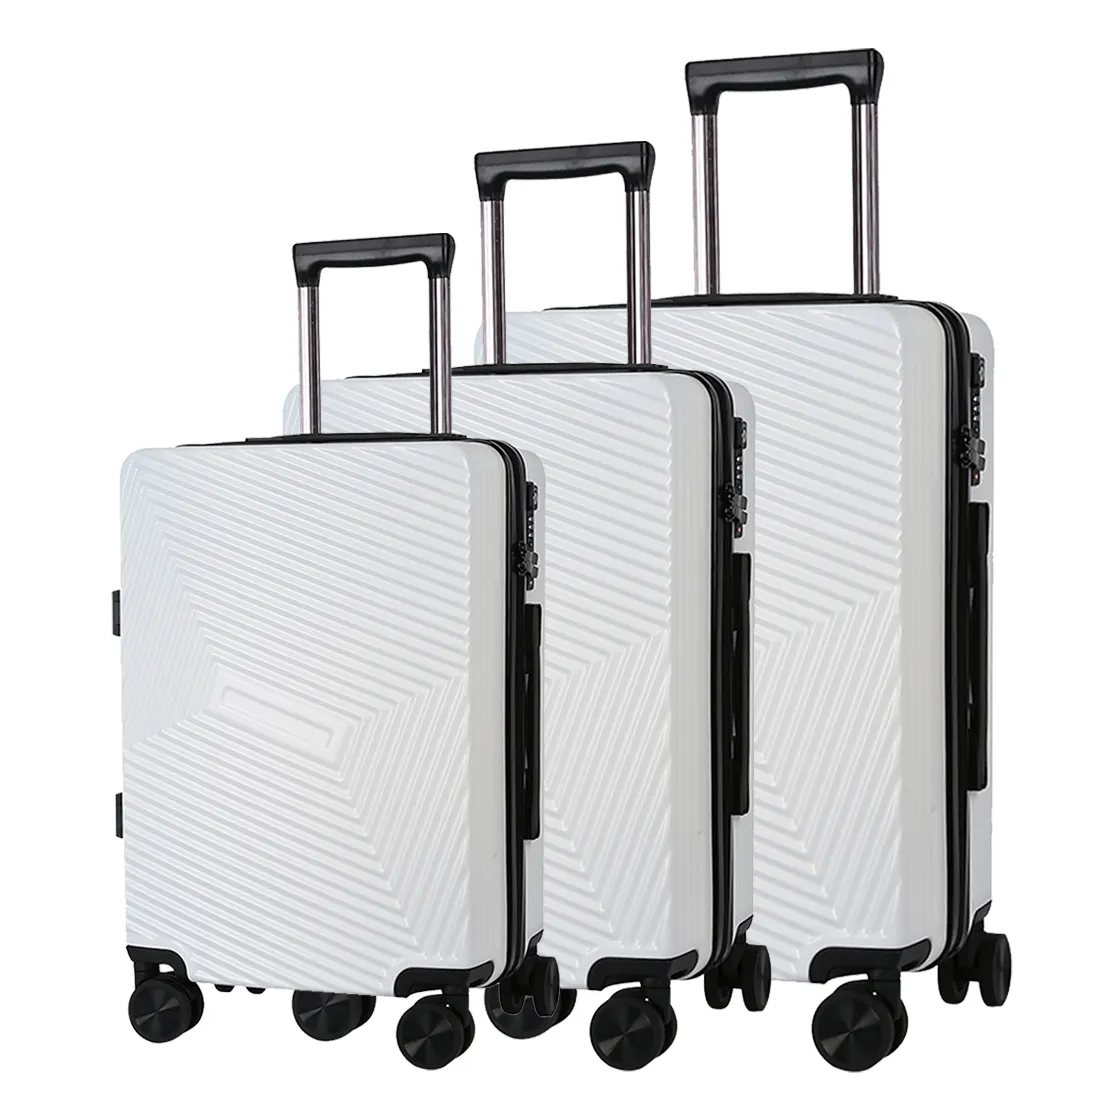 Commercio all'ingrosso di design di lusso con logo personalizzato stampa trolley borse da viaggio set valigie da viaggio